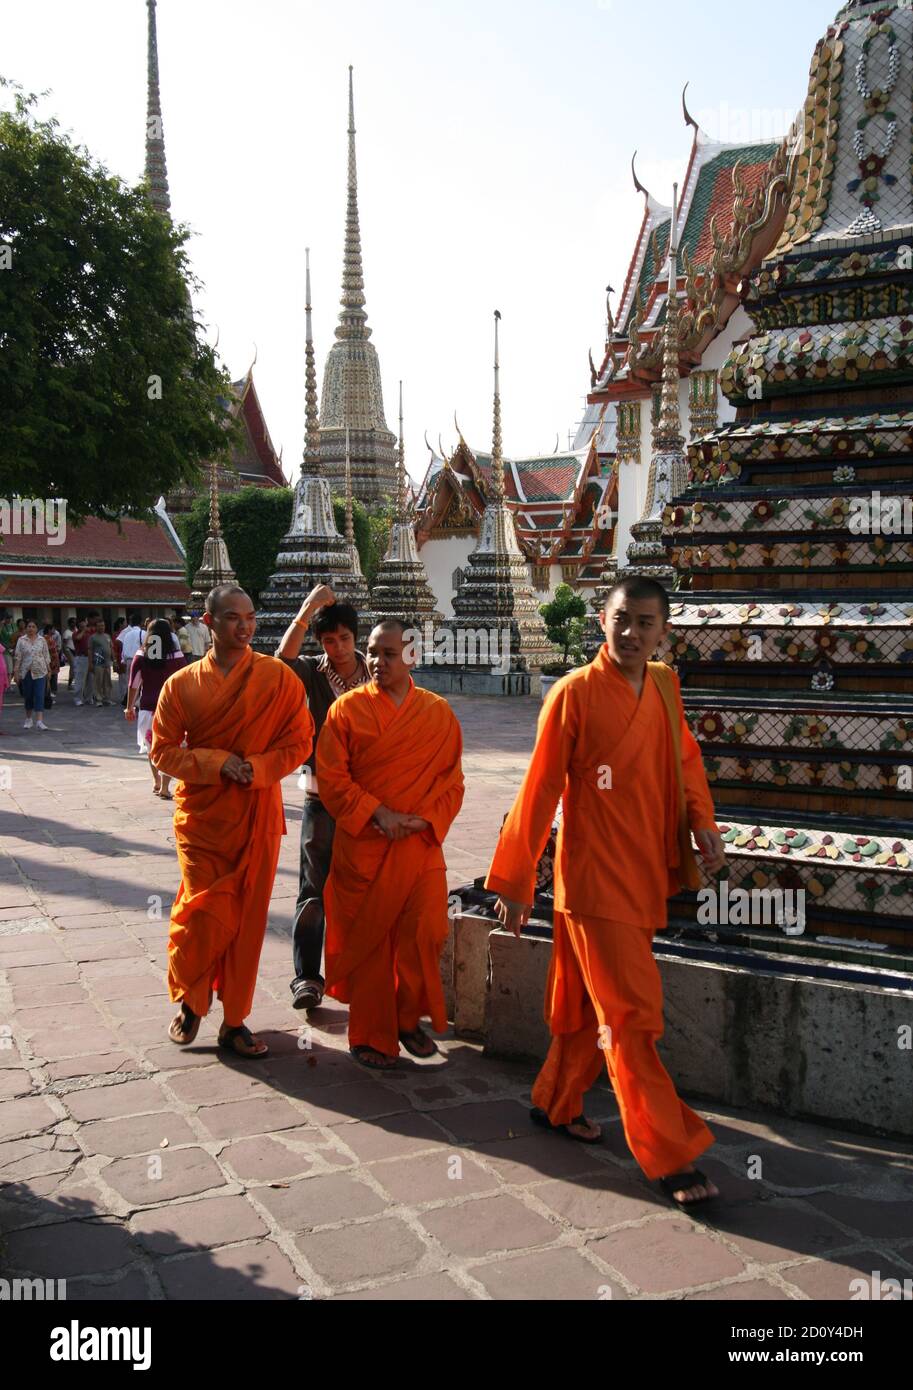 Wat Pho - le Temple du Bouddha couché, Bangkok, Thaïlande, Asie du Sud-est Banque D'Images